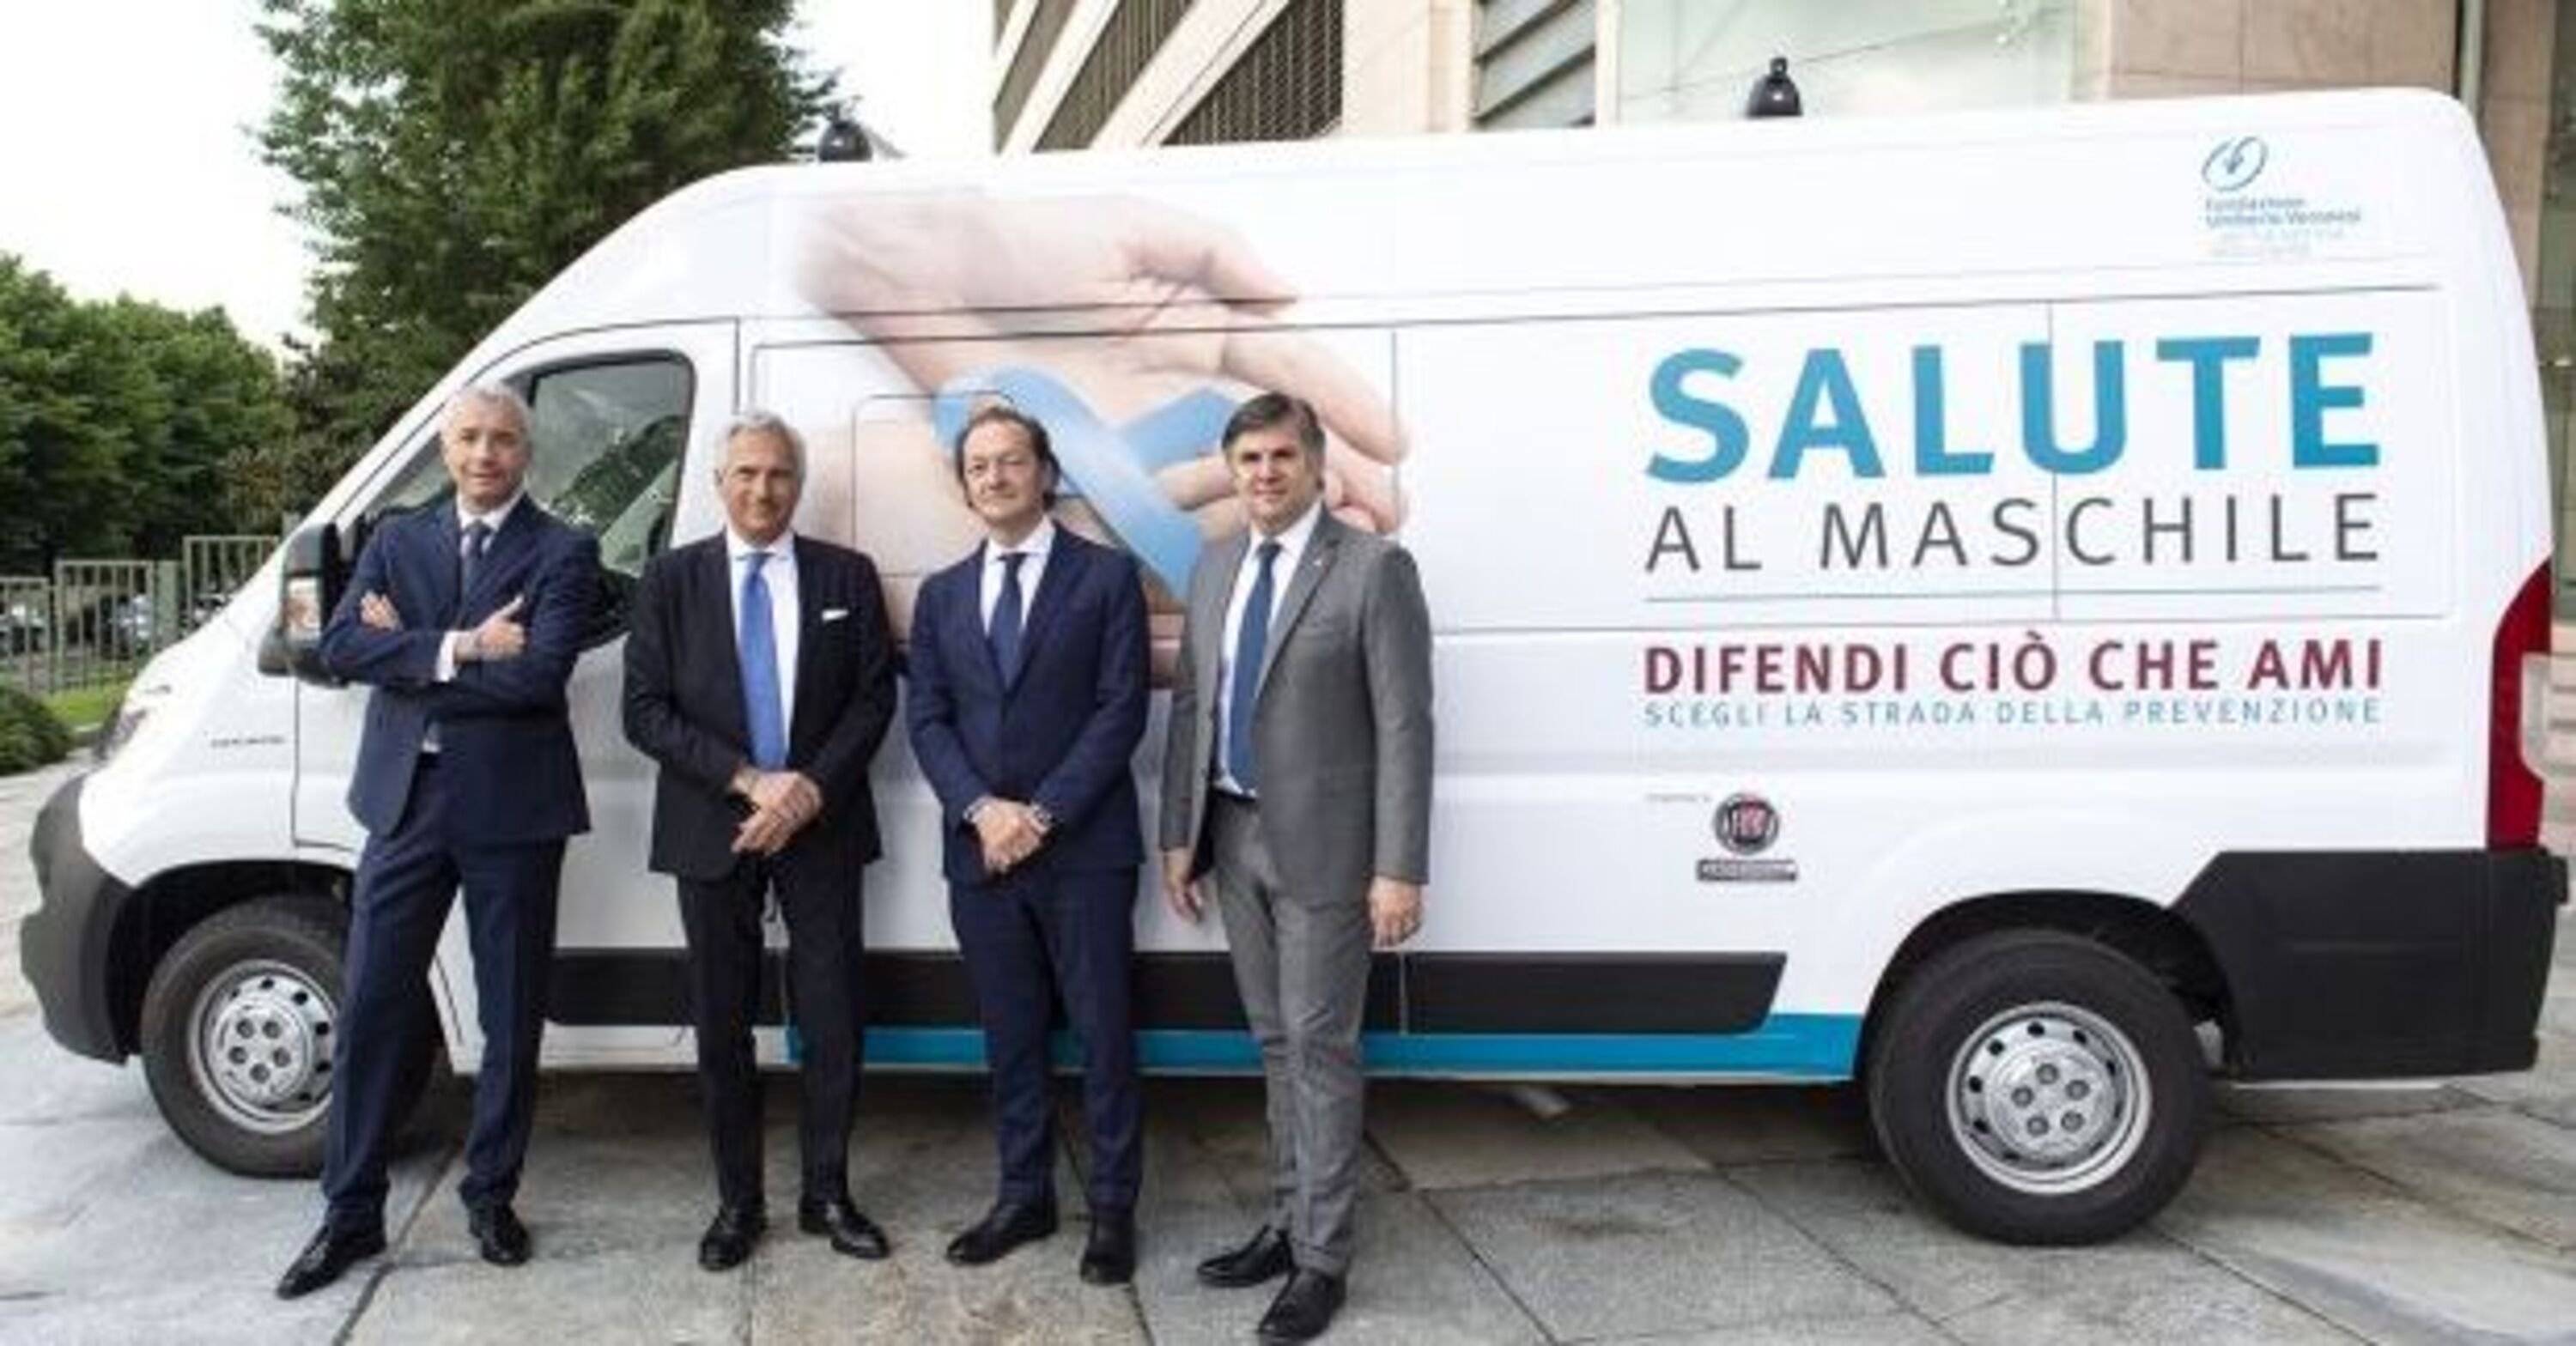 Salute Maschile, Urologia e Auto: Fiat in piazza con i medici di Fondazione Veronesi - visite gratis